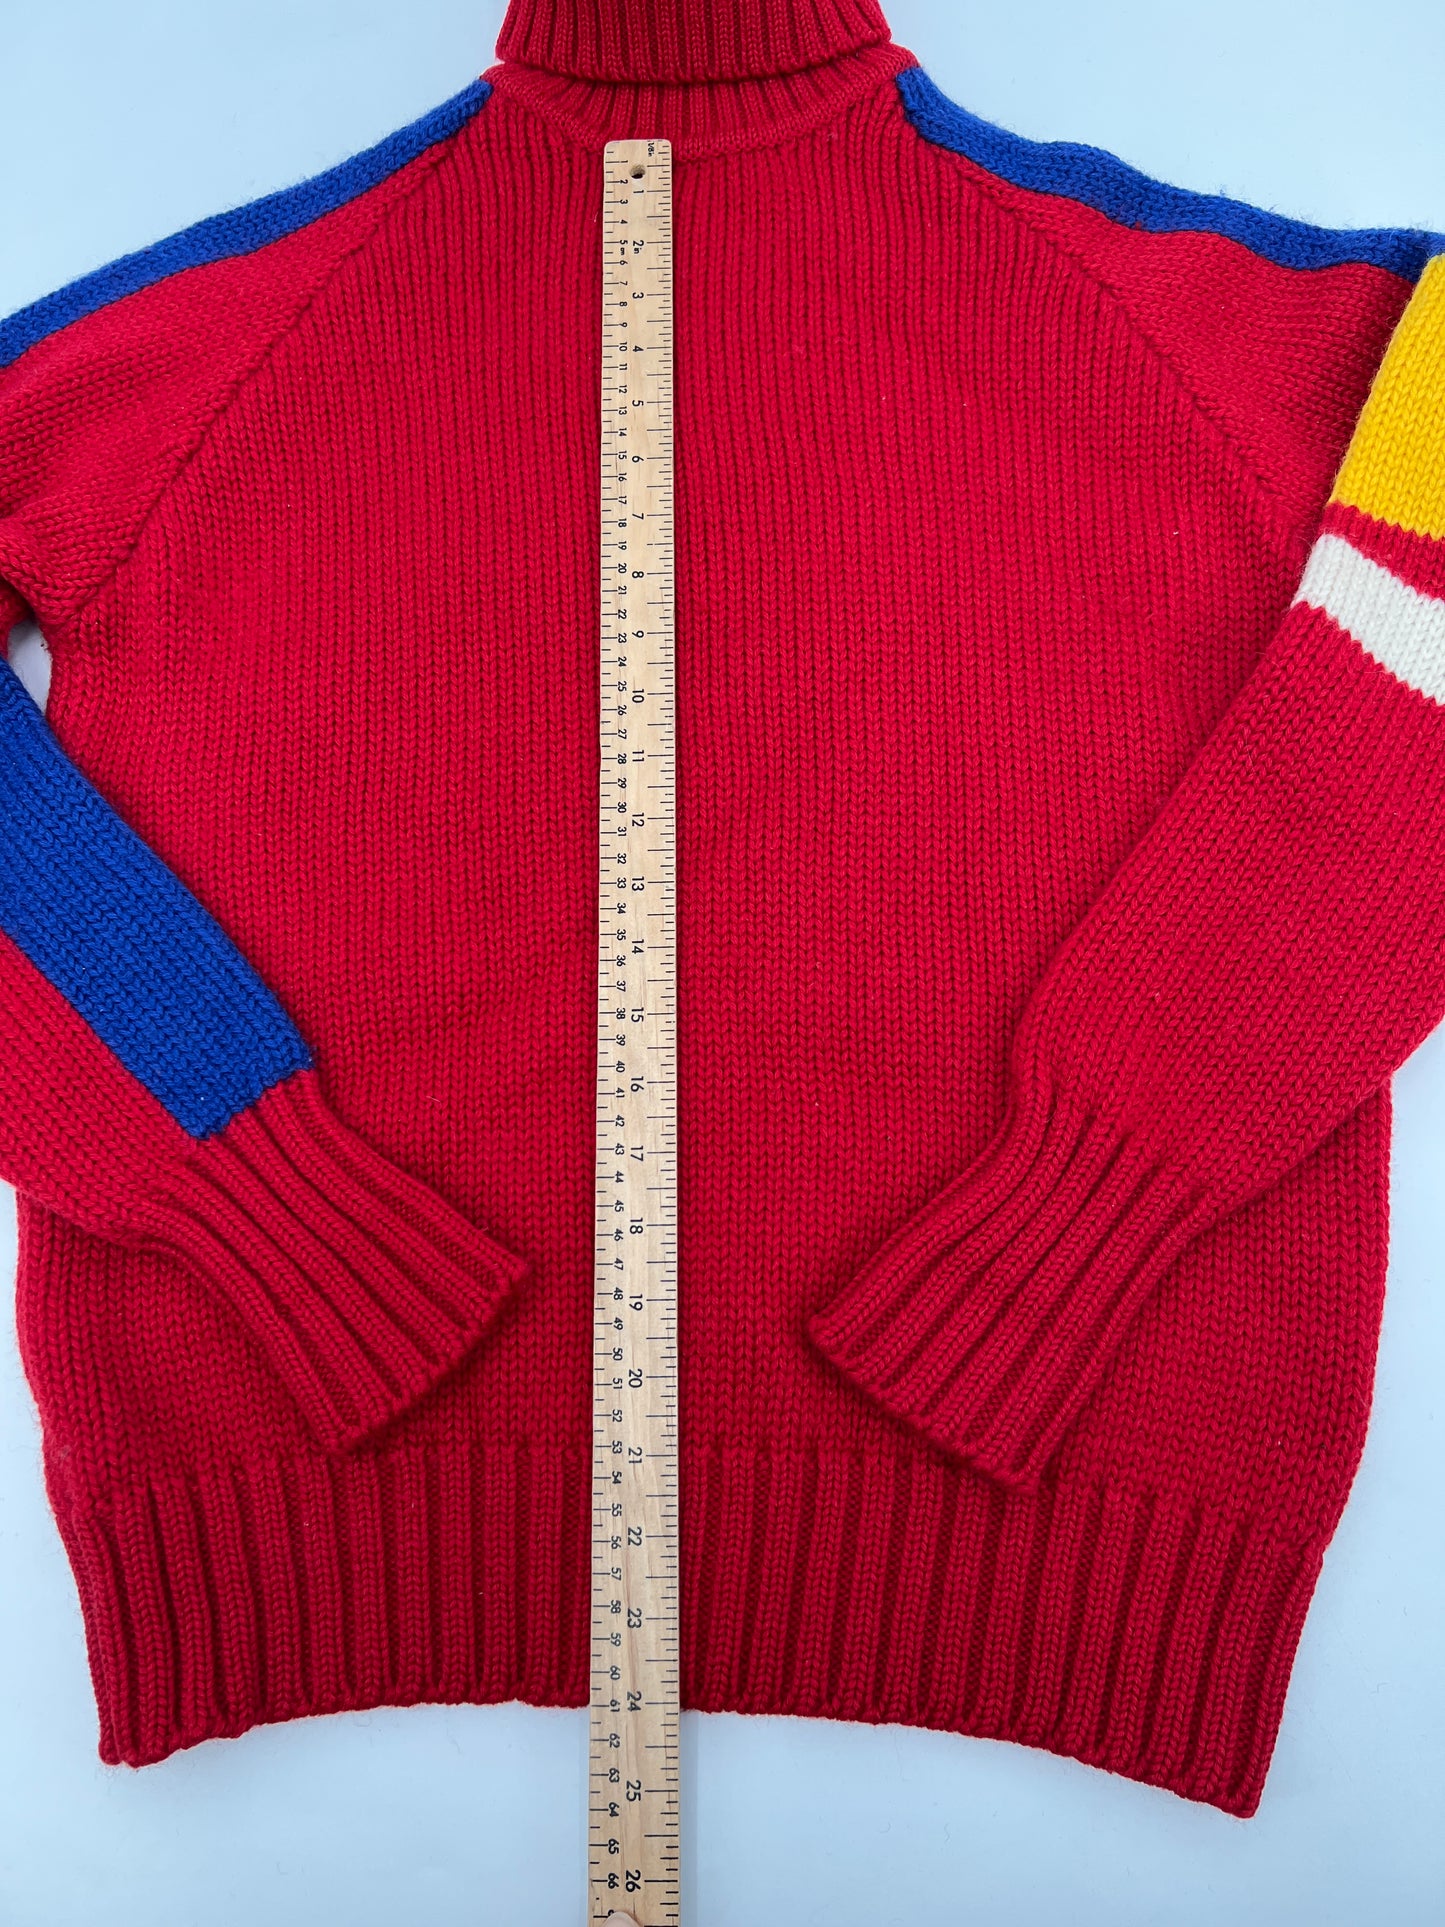 Vintage Turtleneck Ralph Lauren Wool Sweater